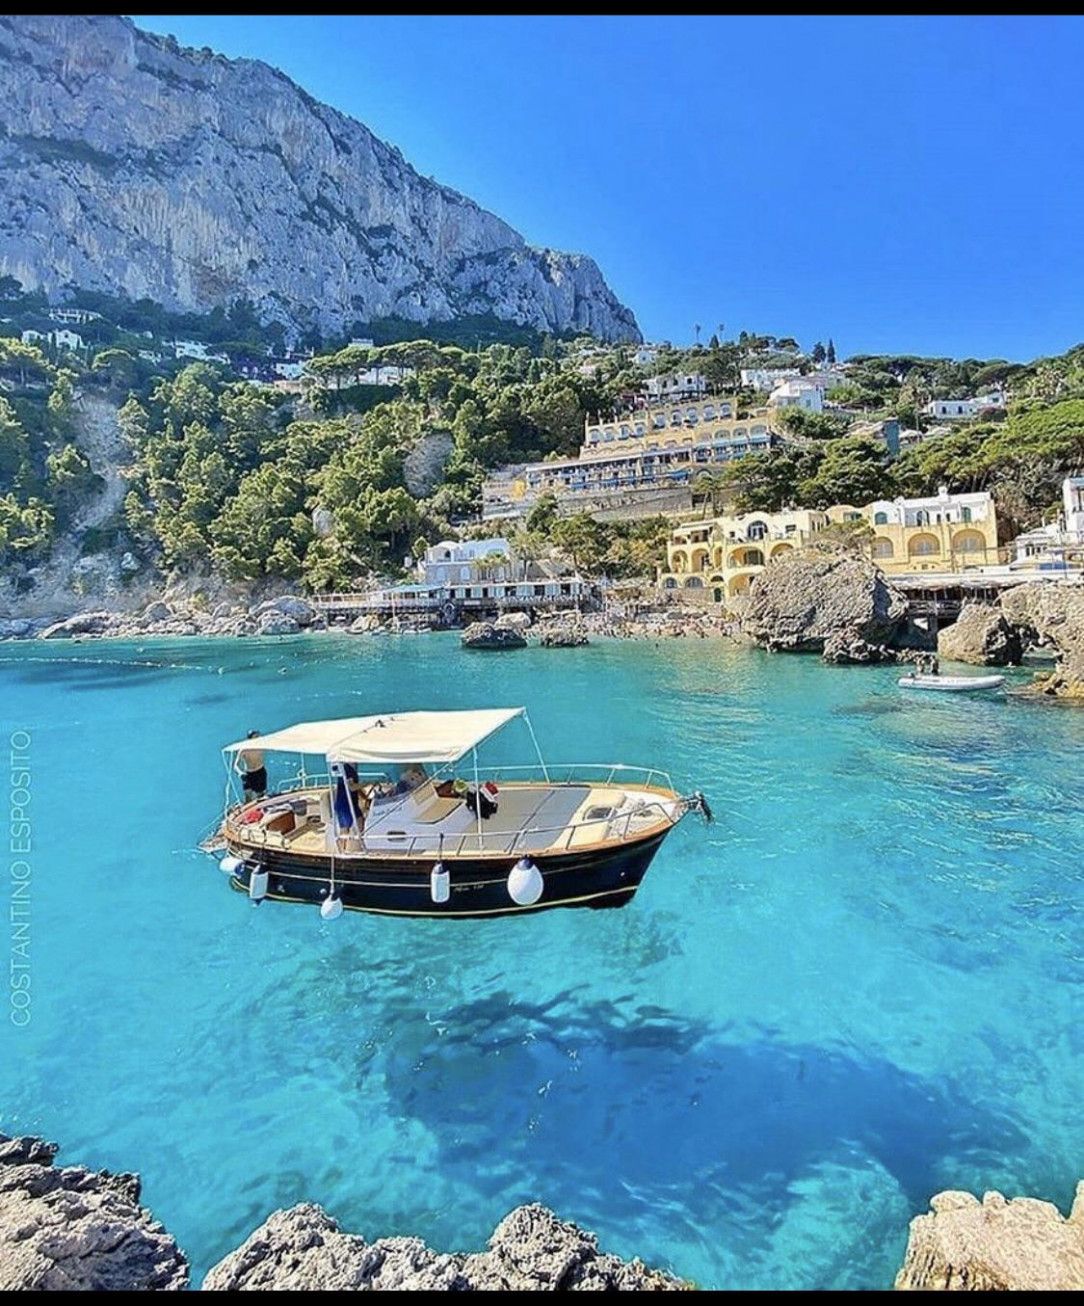 Scenery in Capri Italy